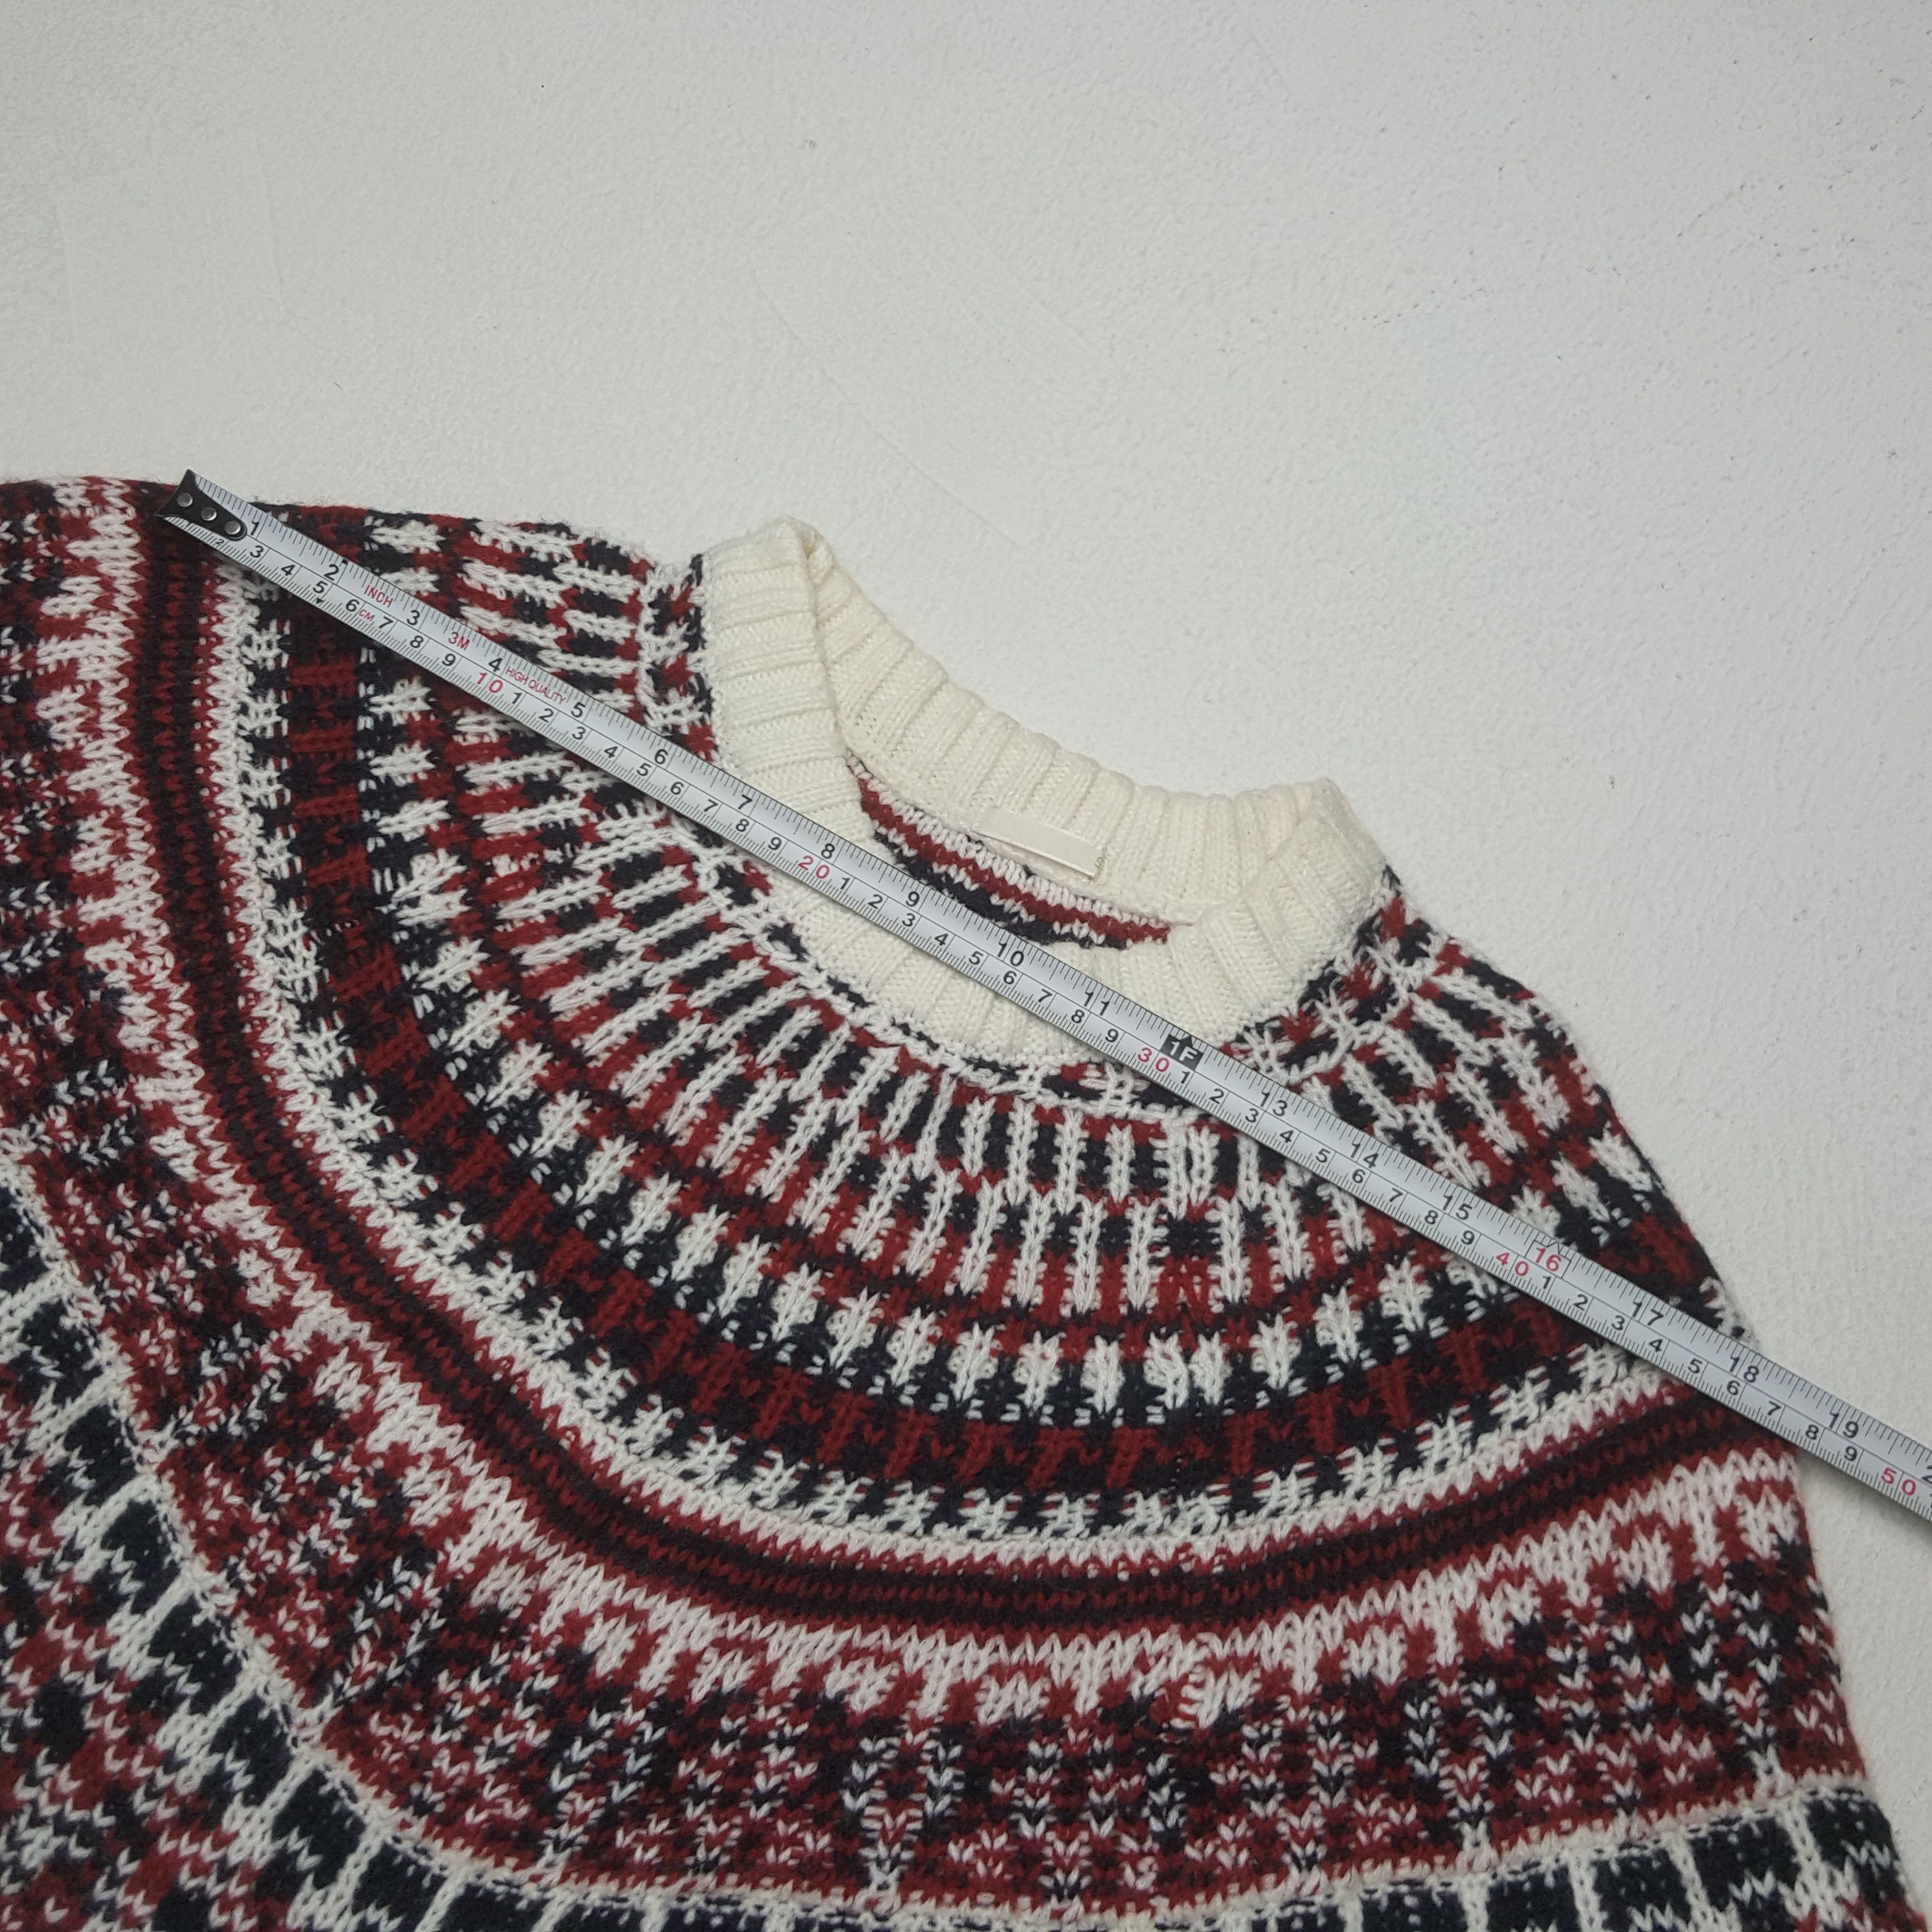 Vintage Vintage Gu Japan Knitwear Sweater Size US XS / EU 42 / 0 - 4 Thumbnail